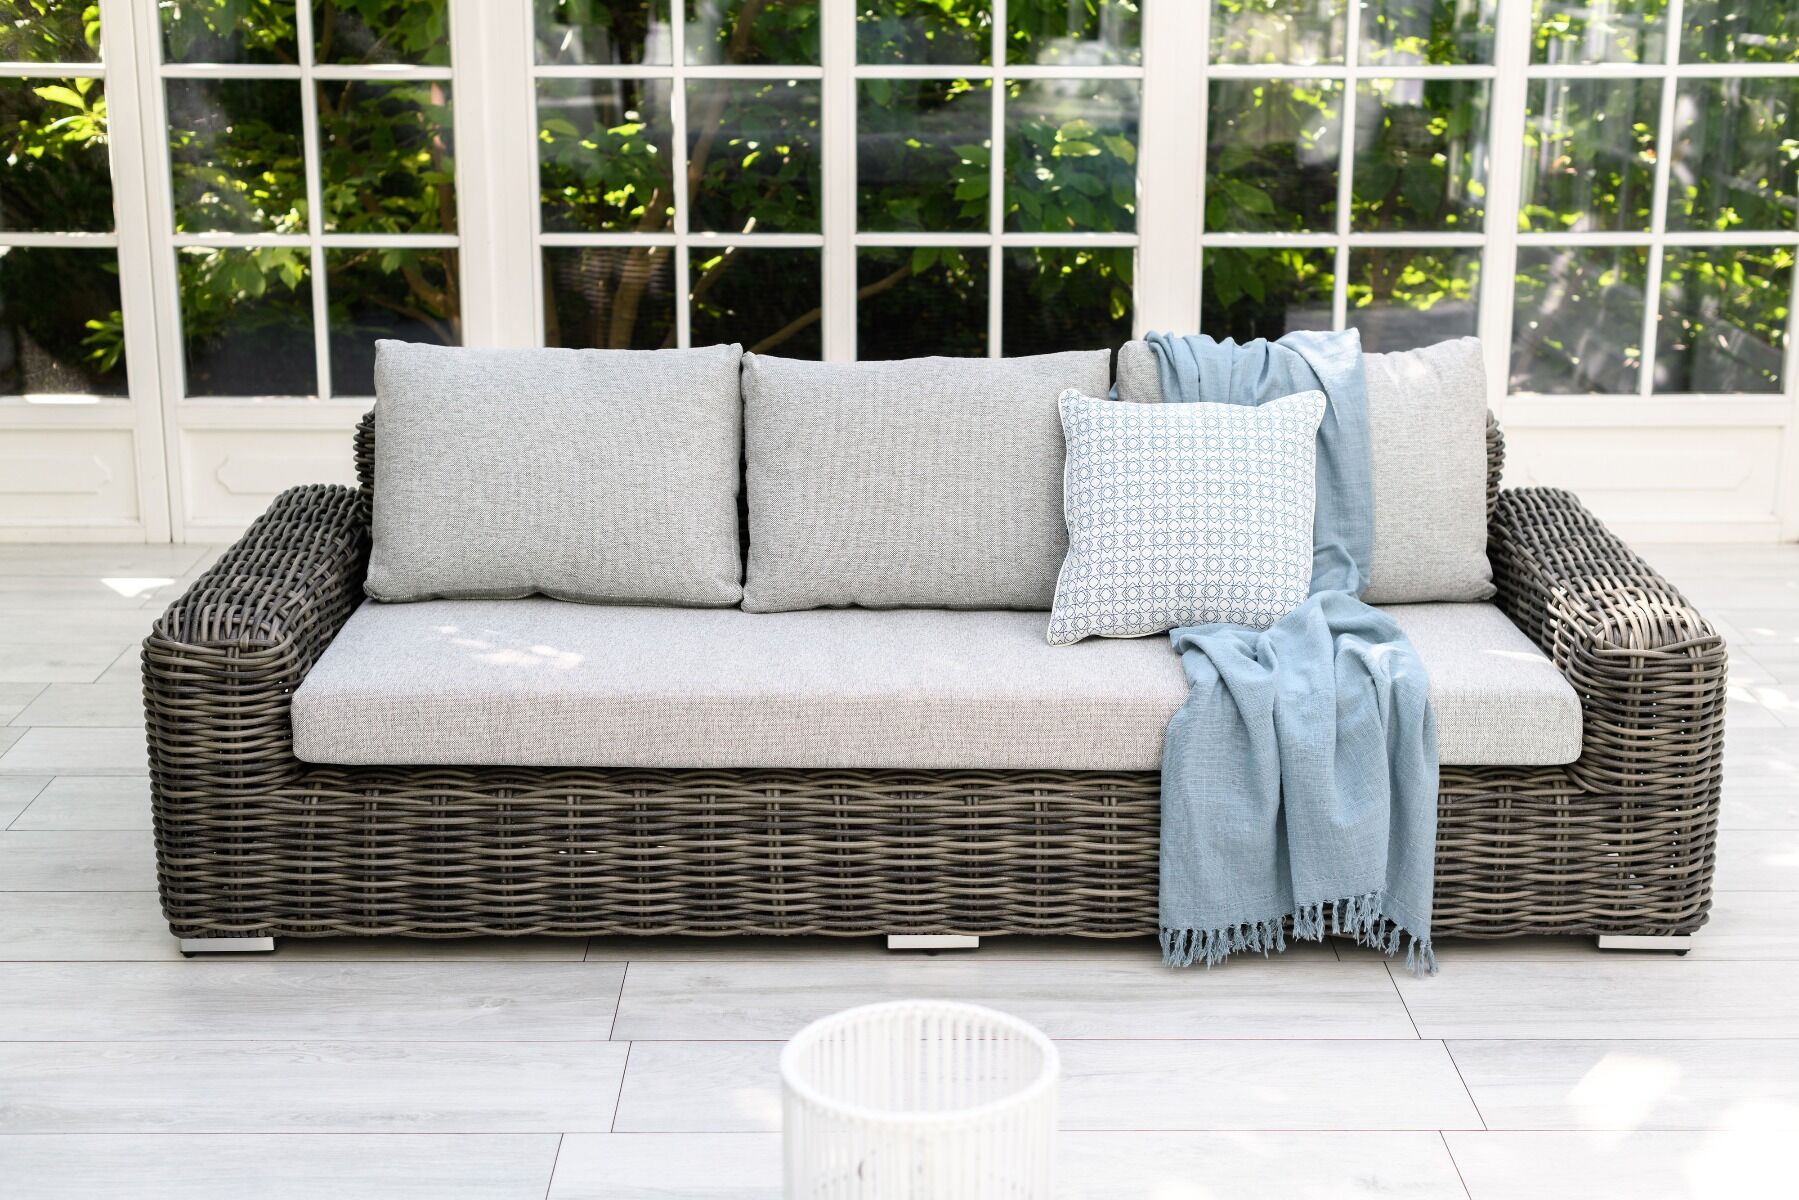 Sofa ogrodowa Maje Grey 3 osobowa 246x99x73cm Miloo Home